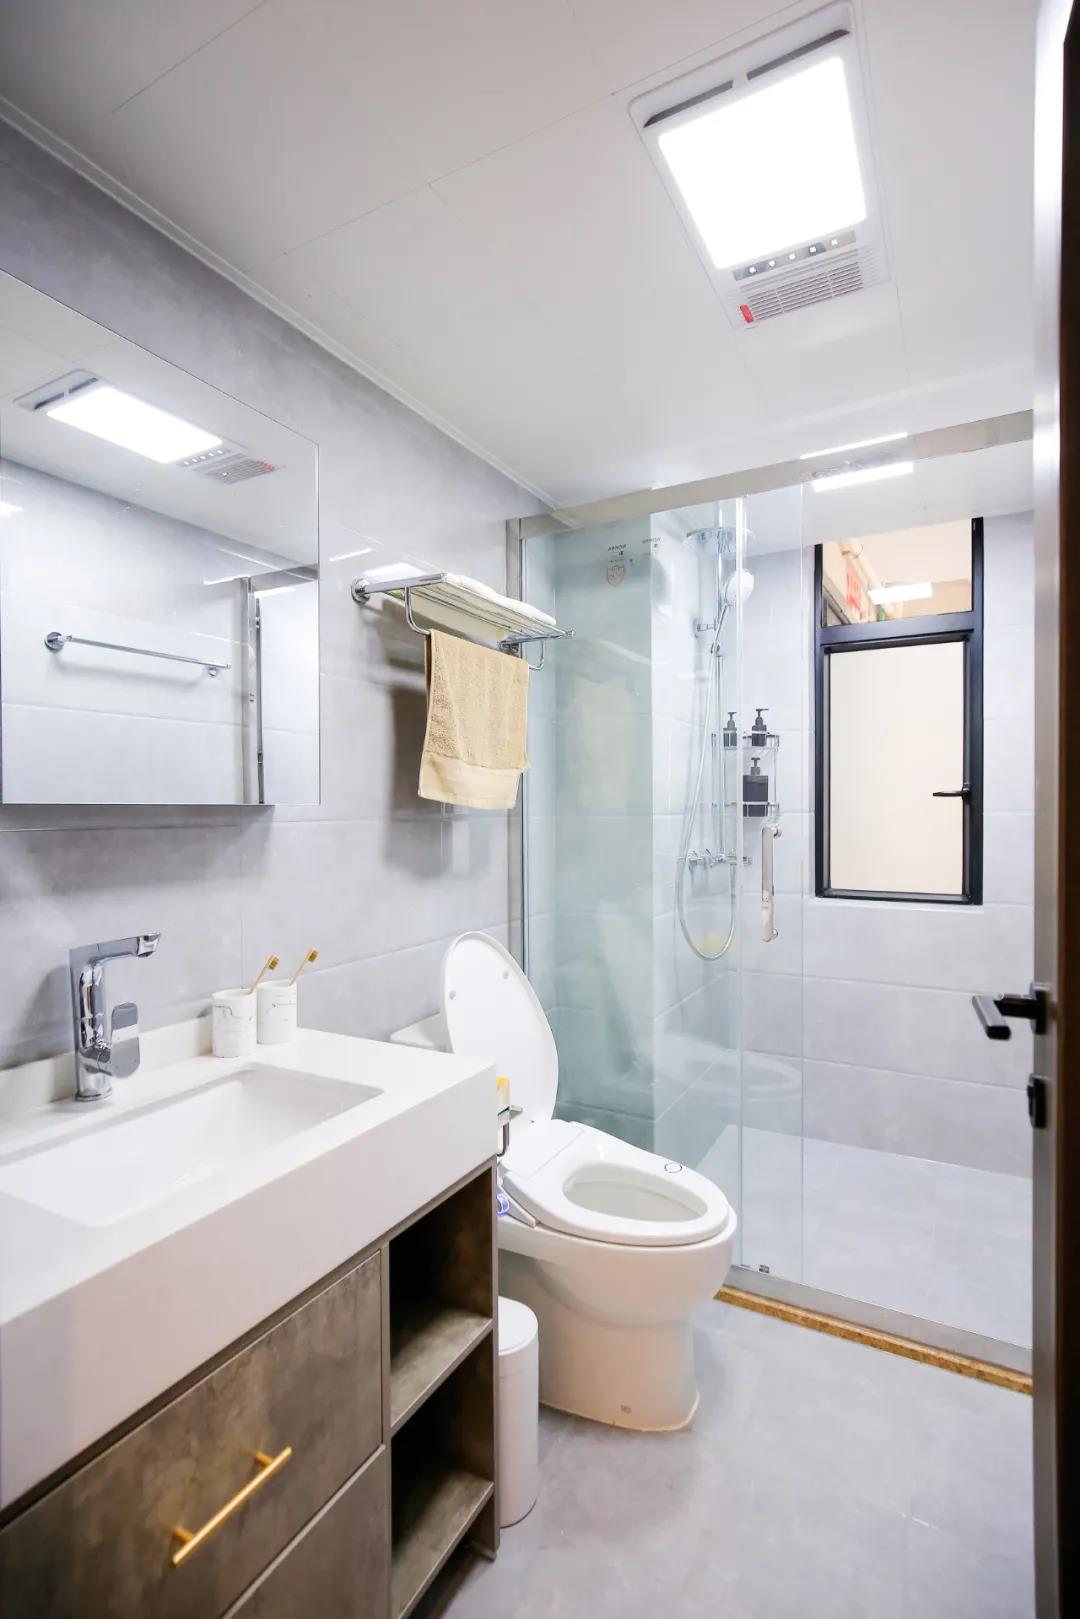 卫生间以灰色地面砖+灰色墙面砖打造，简洁明了，对简约实用的卫浴空间进行干湿分离。